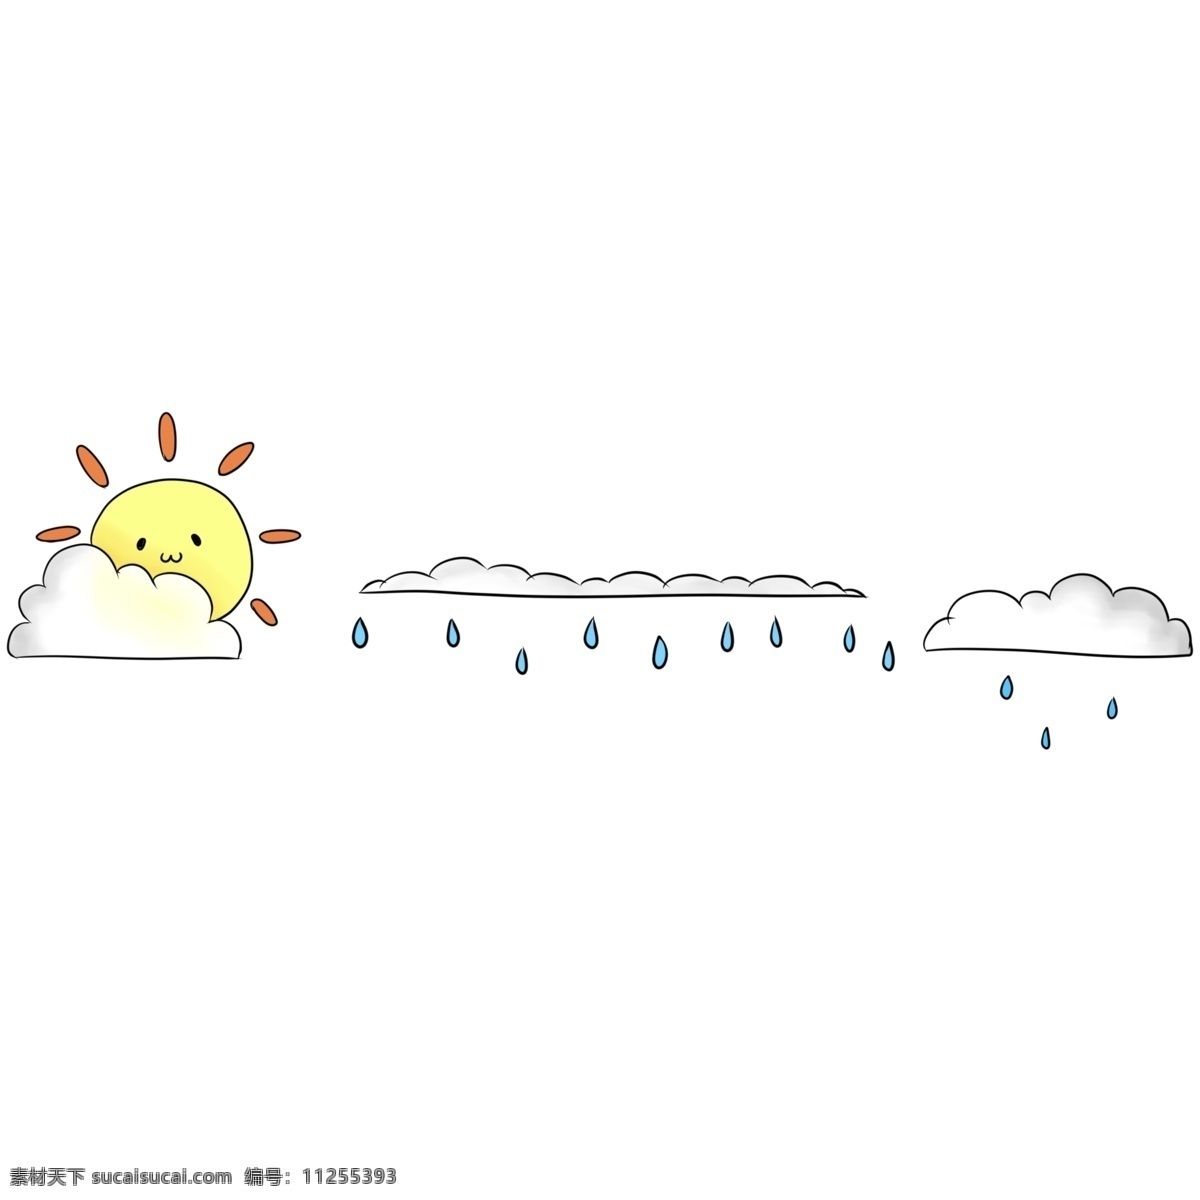 太阳 云朵 分割线 装饰 太阳分割线 云朵分割线 黄色太阳 雨滴分割线 分割线装饰 卡通分割线 可爱的分割线